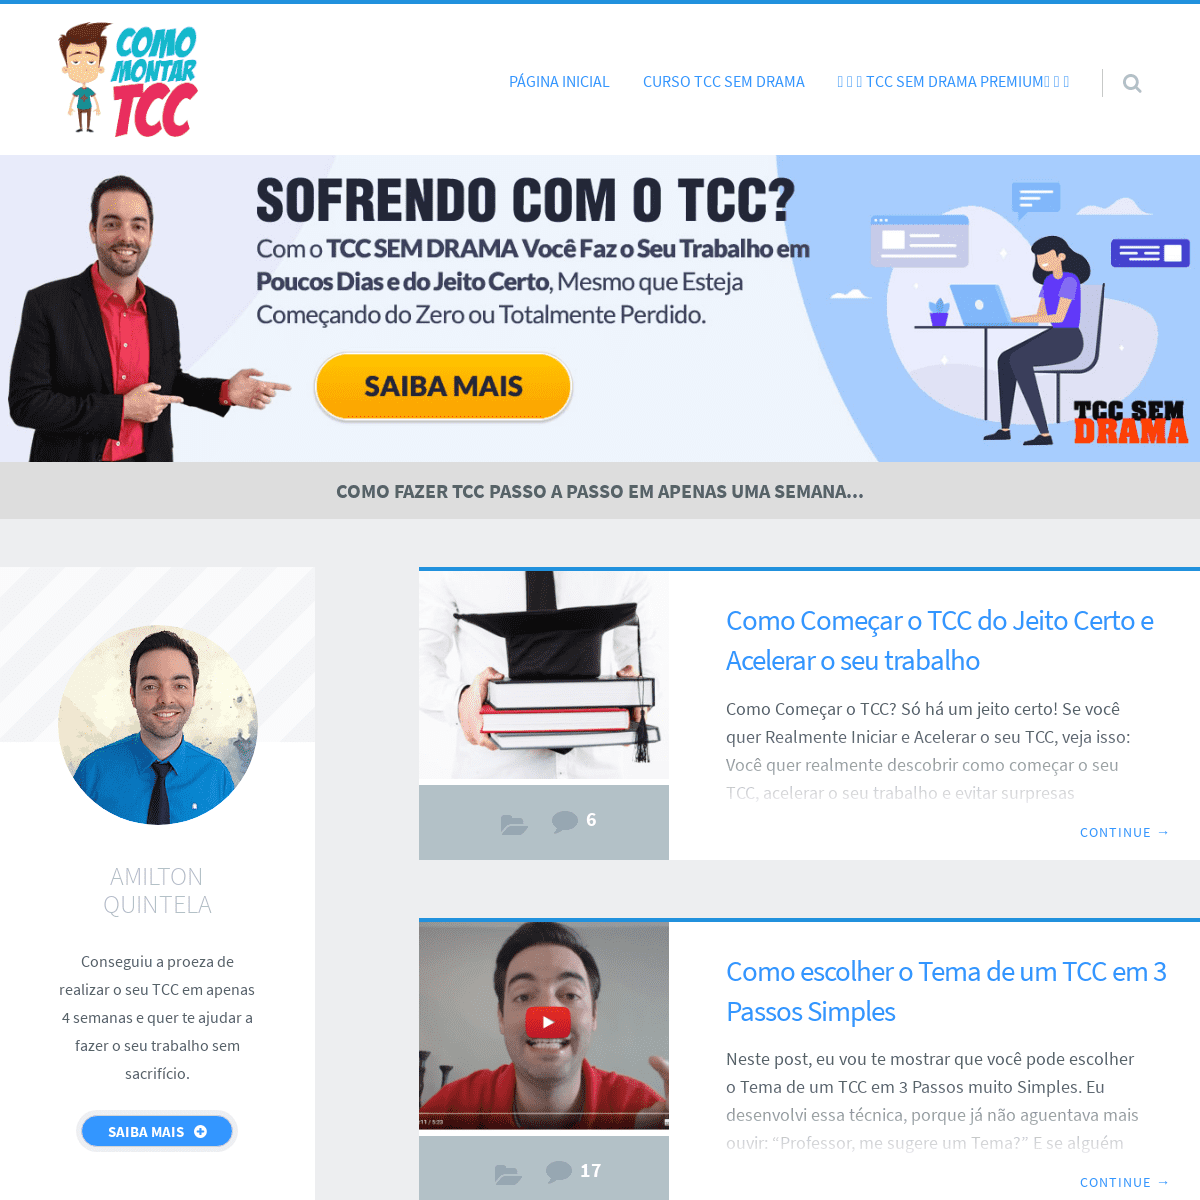 A complete backup of comomontartcc.com.br